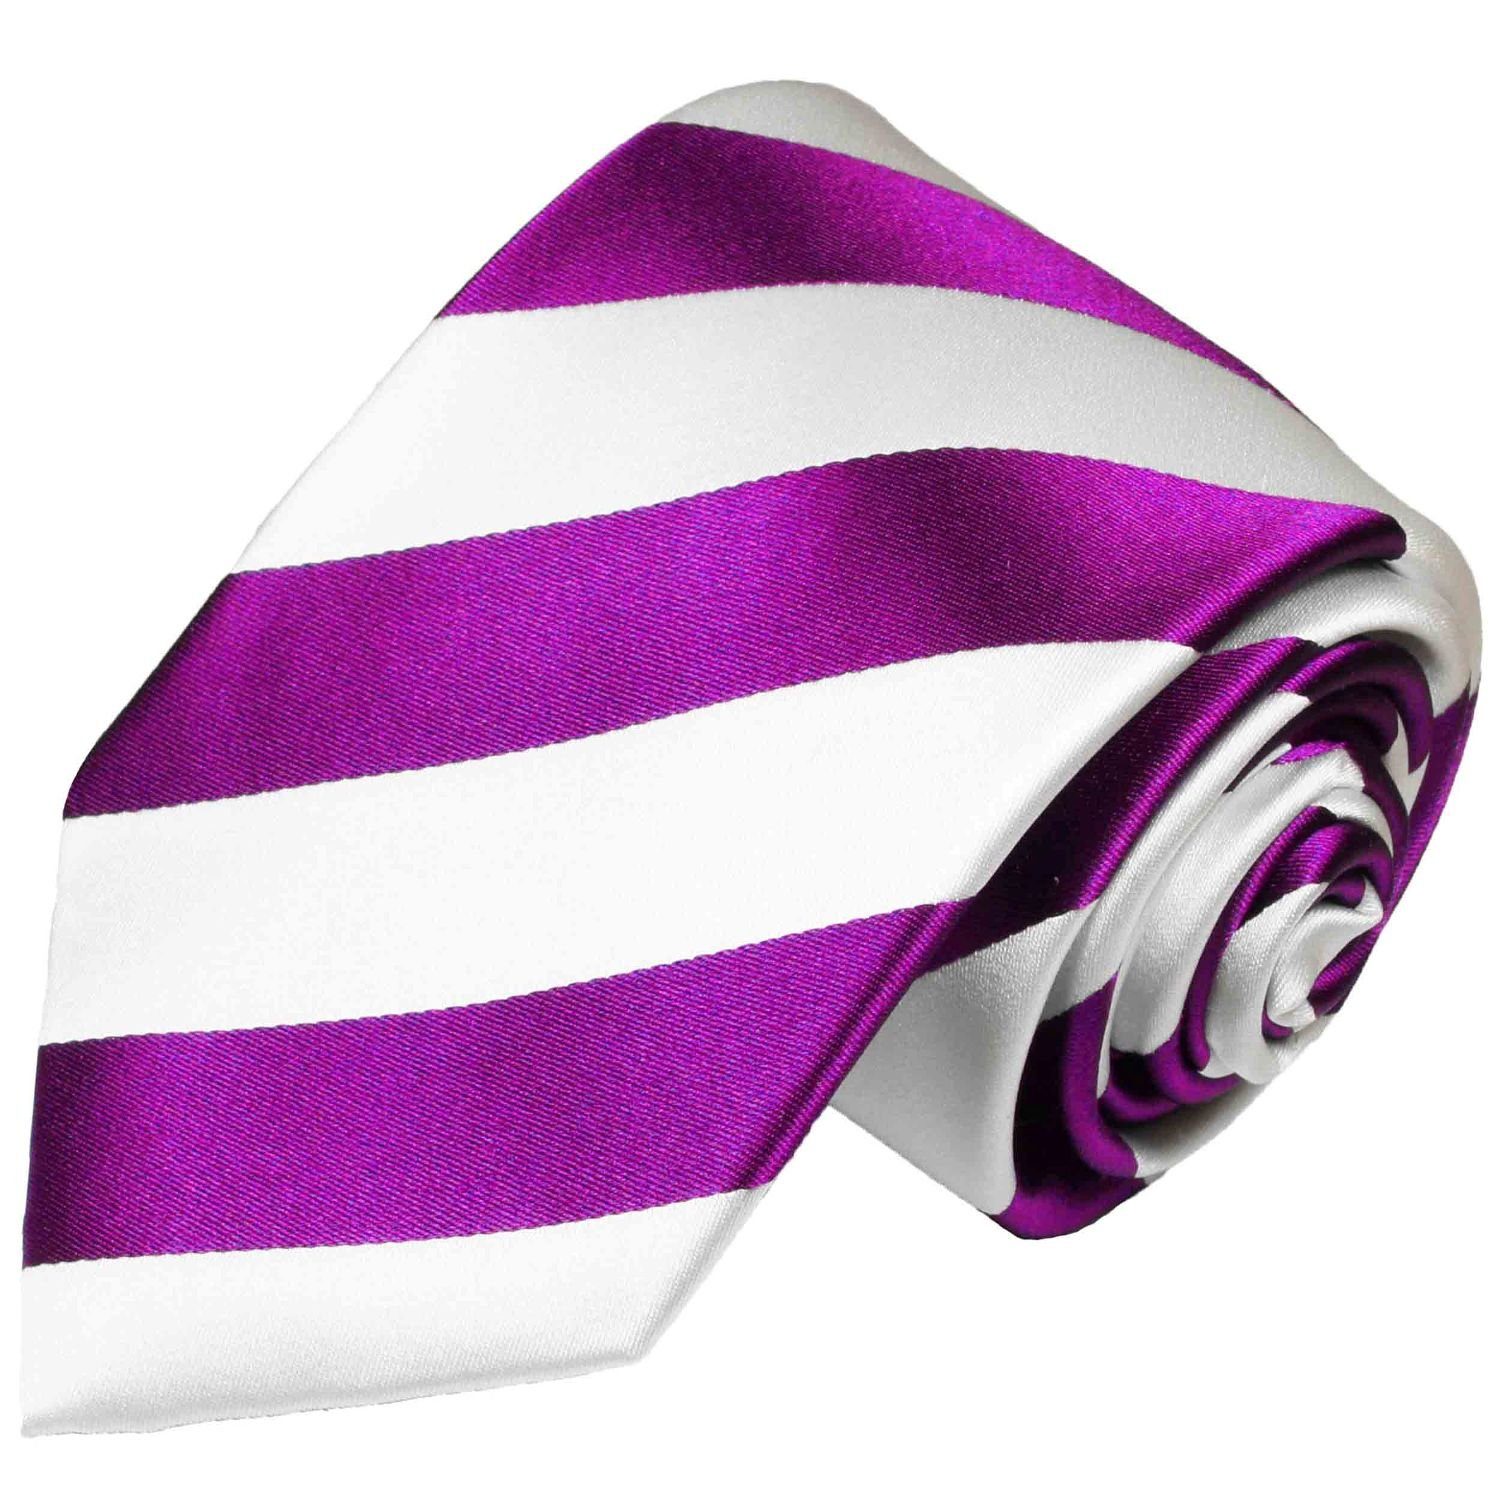 Paul Malone Krawatte Herren Seidenkrawatte Streifen Schlips modern gestreift 100% Seide Schmal (6cm) pink | Breite Krawatten